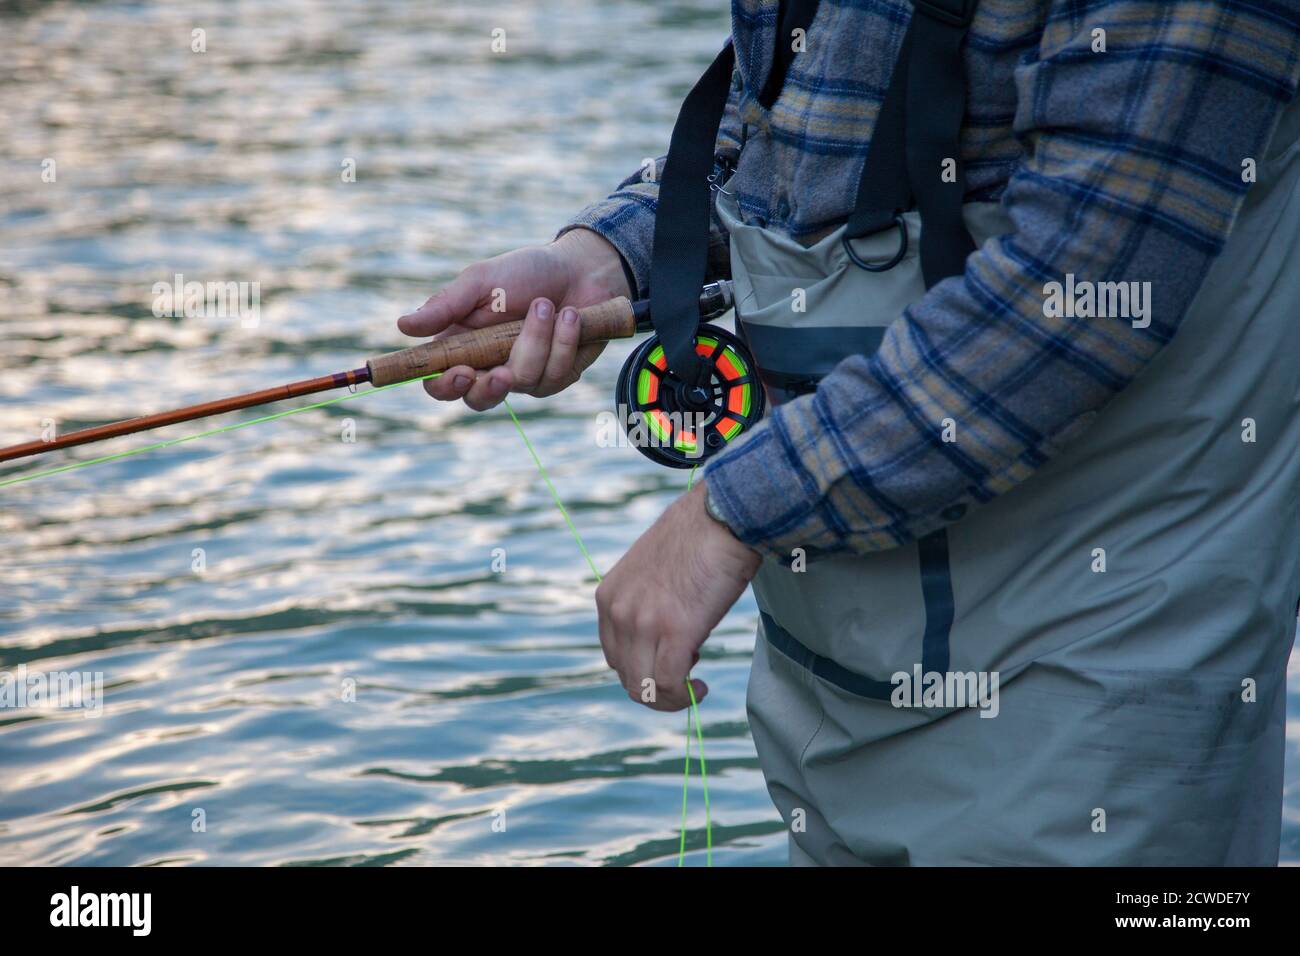 Un gros plan d'un pêcheur de mouche portant une chemise à carreaux, tenant une tige et un rabatteur tout en barbotant dans l'eau à Vancouver, en Colombie-Britannique Banque D'Images